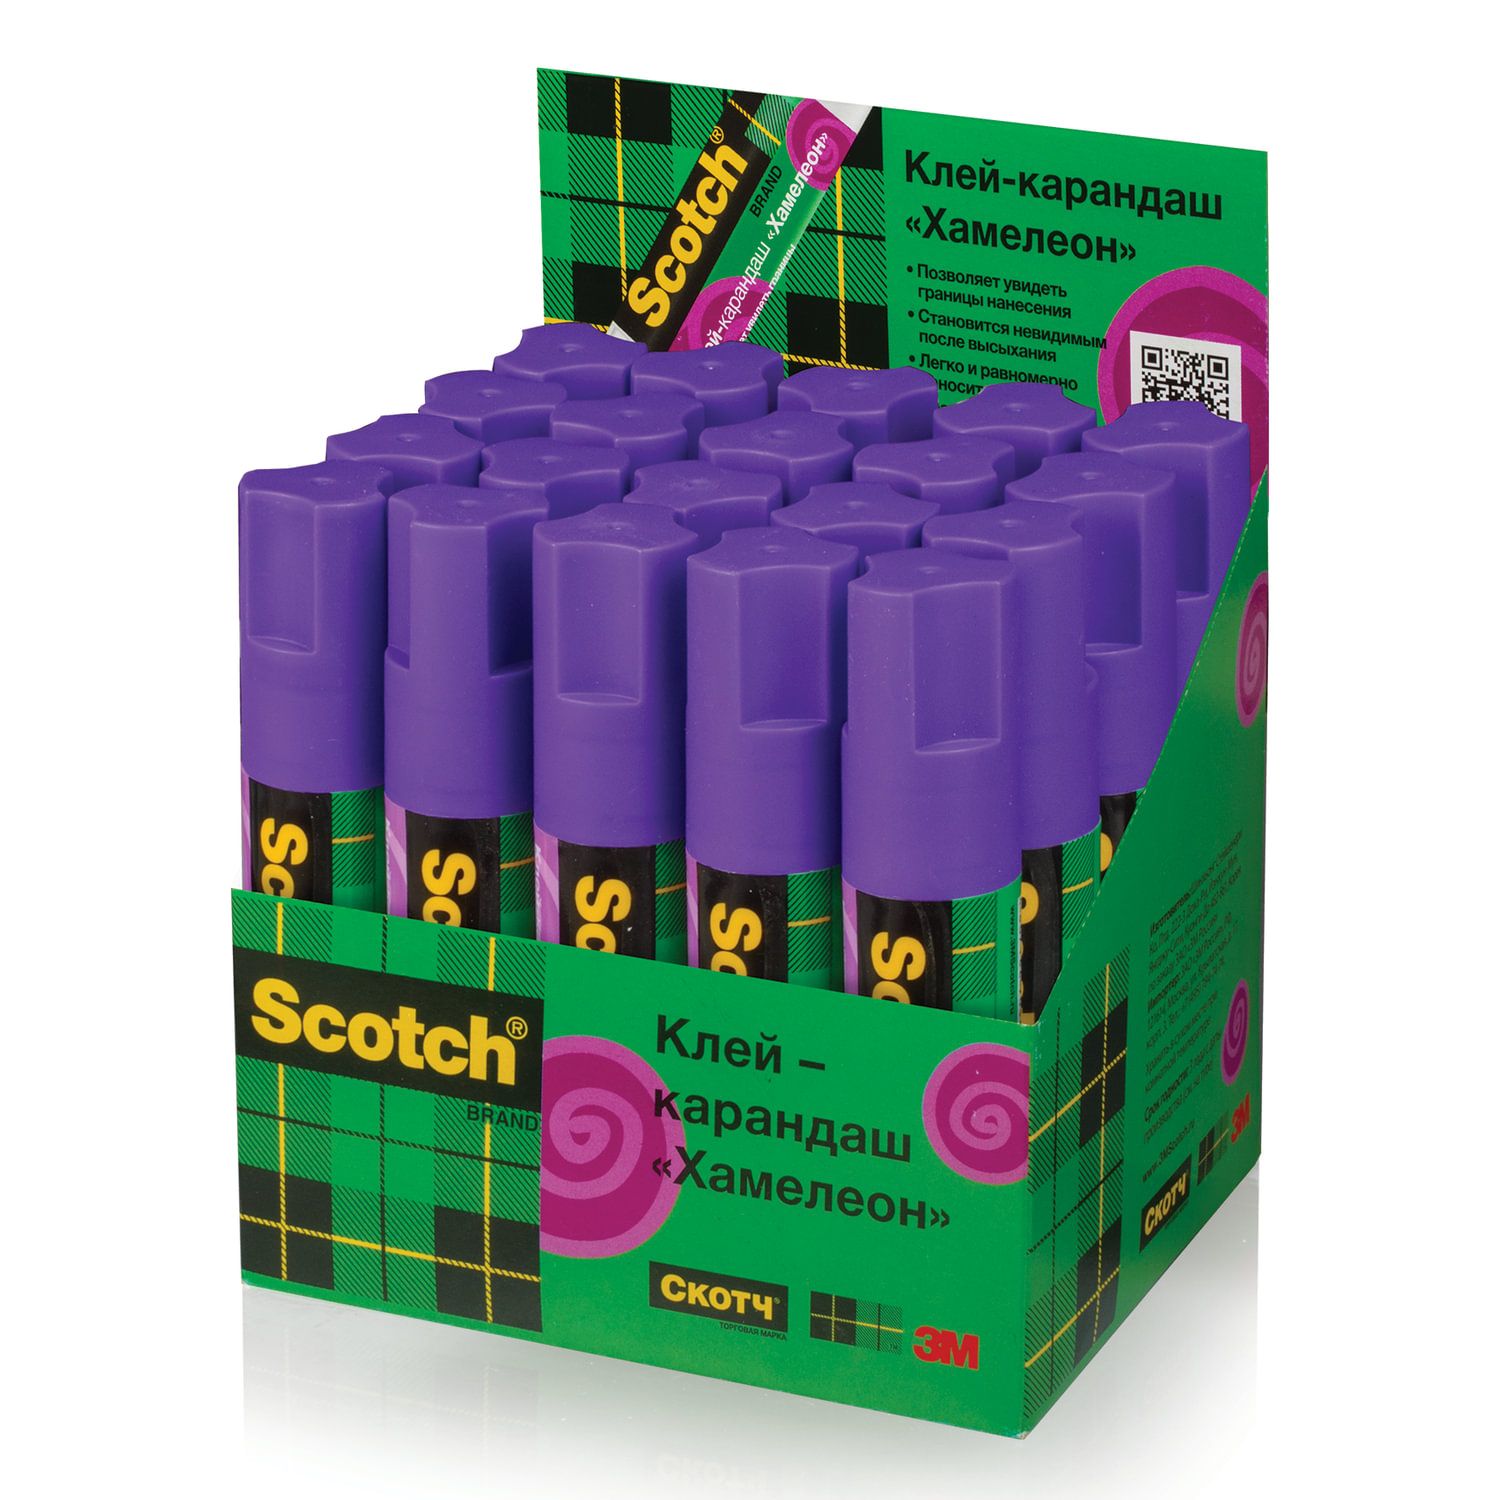 Хамелеон 15. Клей-карандаш Scotch, 15 г. Scotch клей карандаш. Клей-карандаш 3m 6115d20 Scotch хамелеон 7100025018 15гр фиолетовый - 20 шт. Клей карандаш хамелеон.